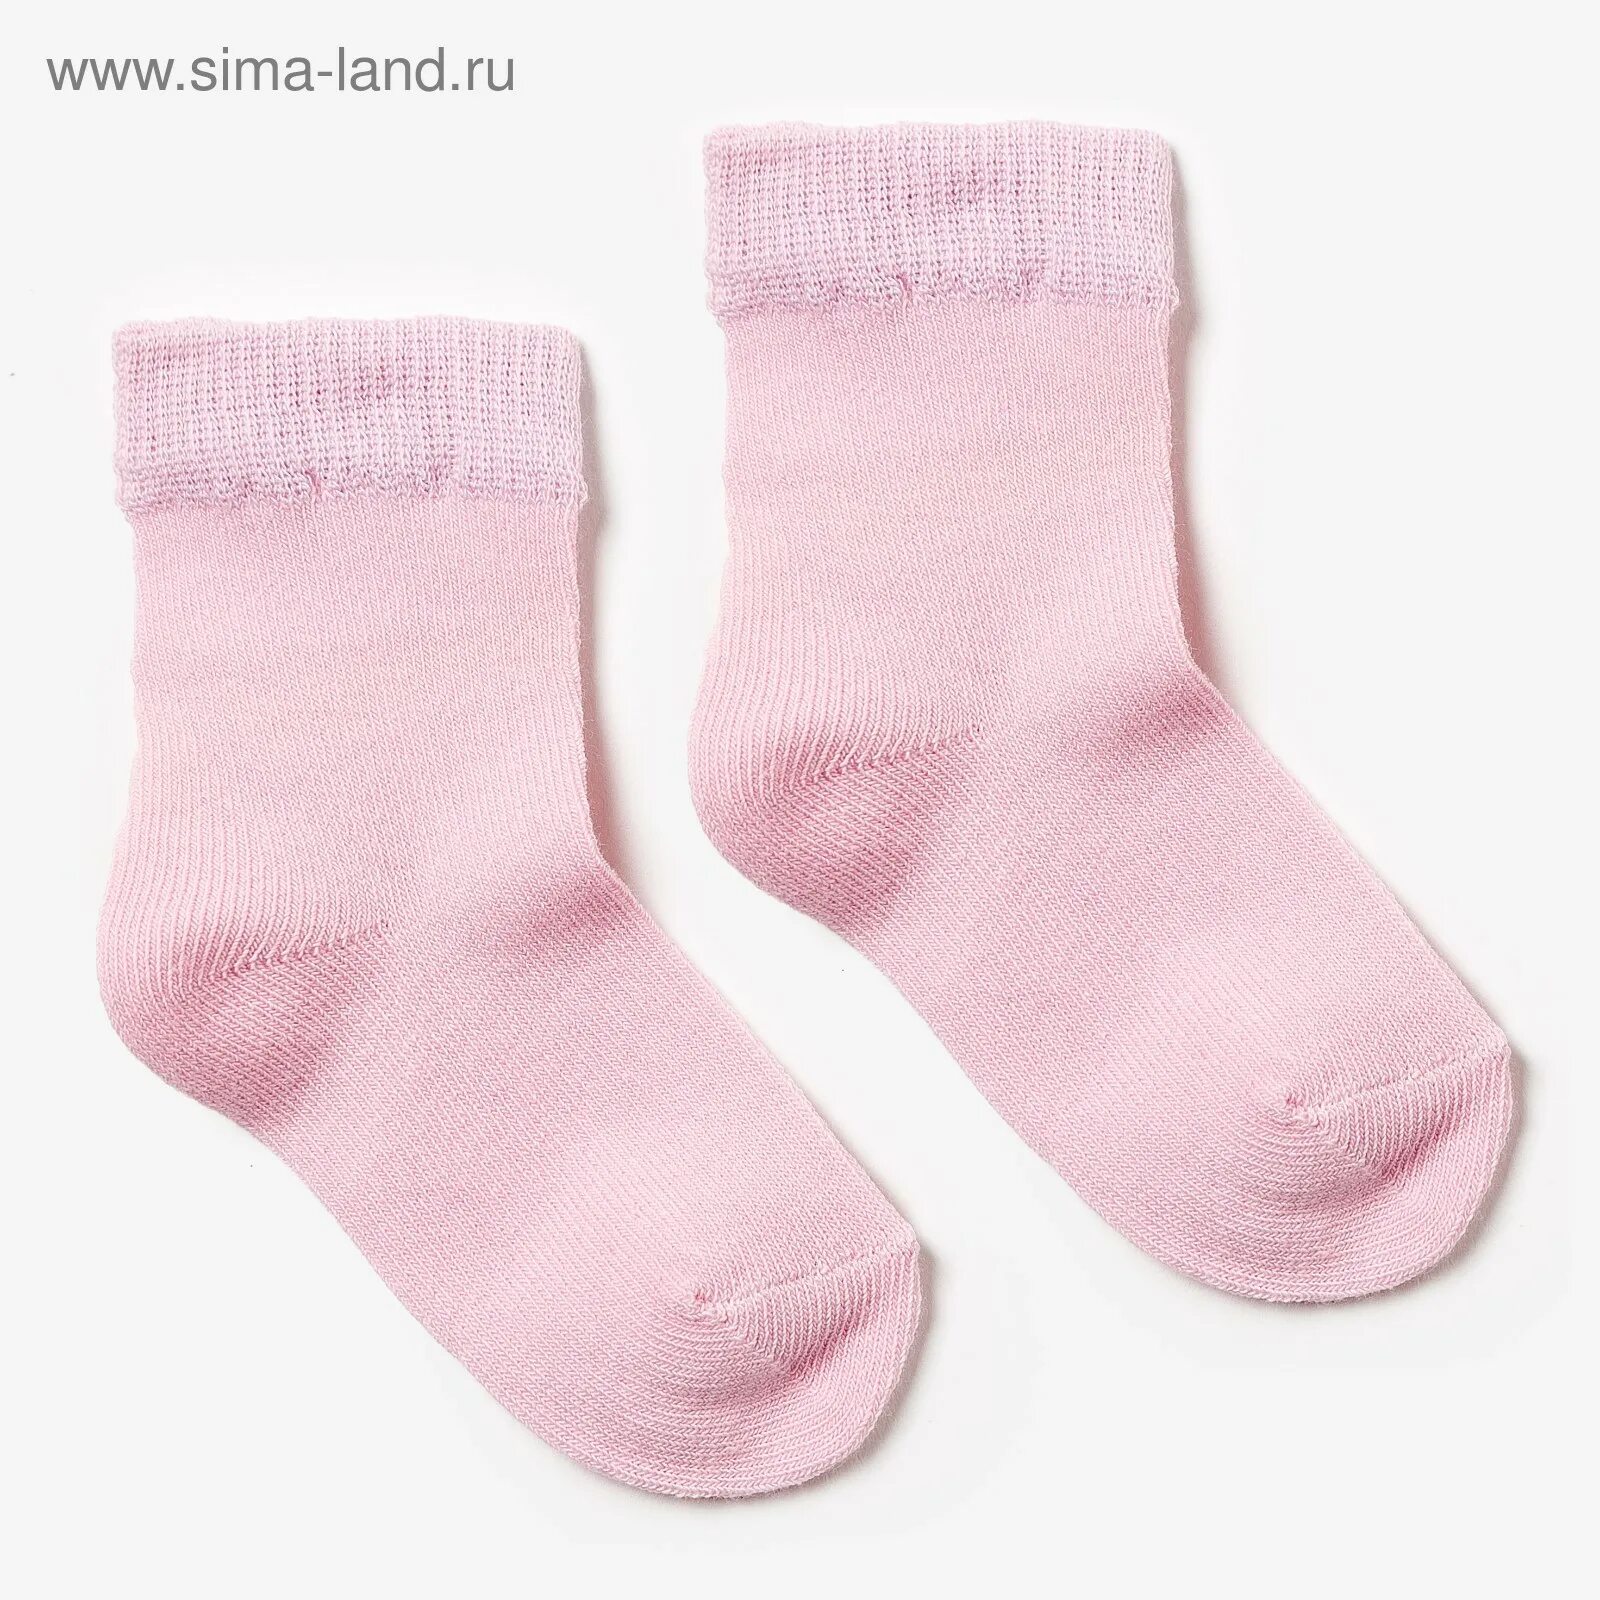 С190 3шт/уп носки детские/меланж розовый р.12-14. Носки для детей. Розовые носки. Розовые носочки детские. Картинка носочки